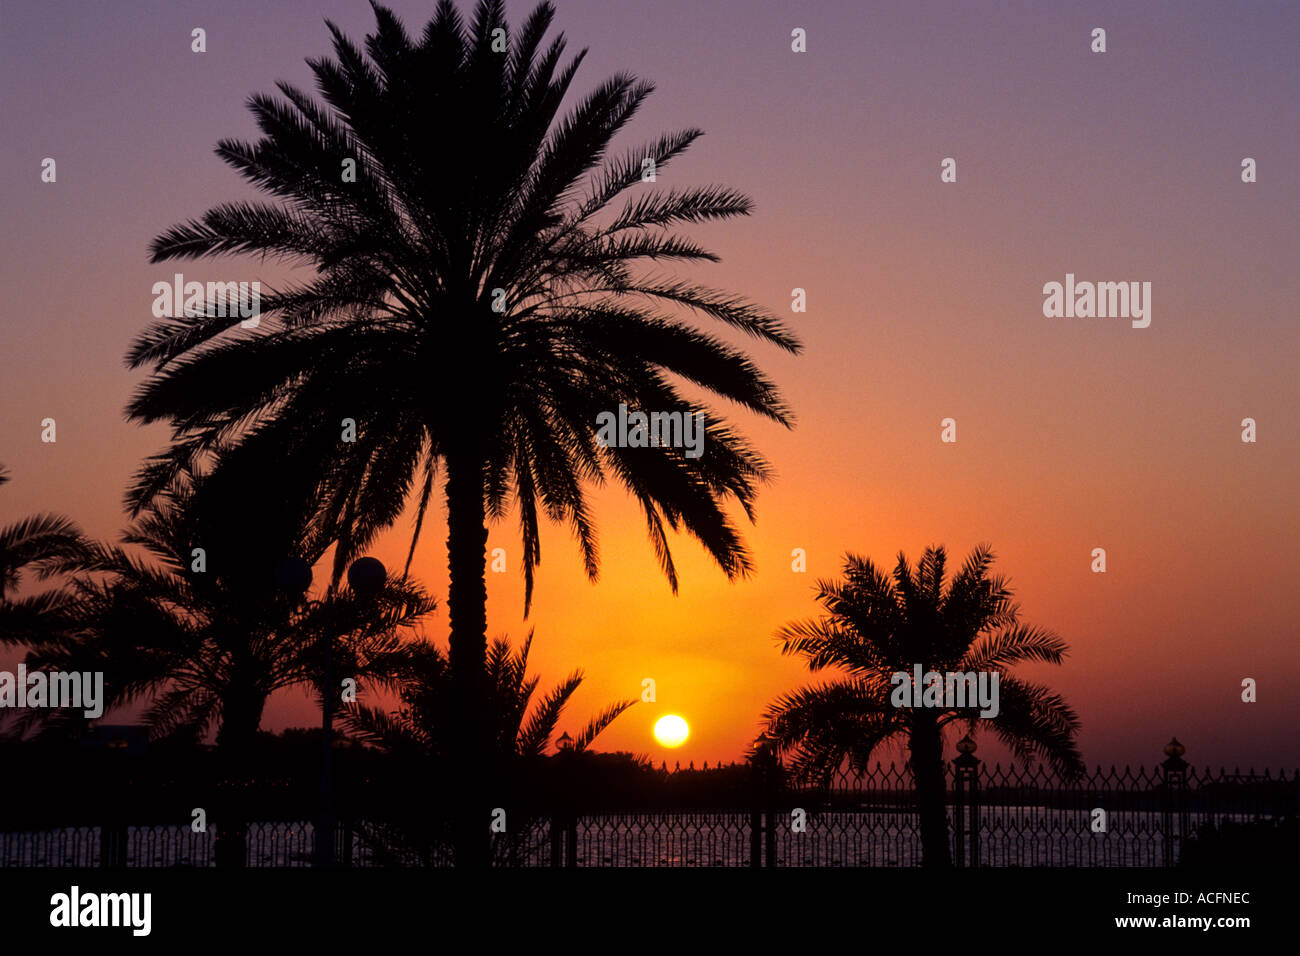 Batin sunset Abu Dhabi United Arab Emirates Stock Photo